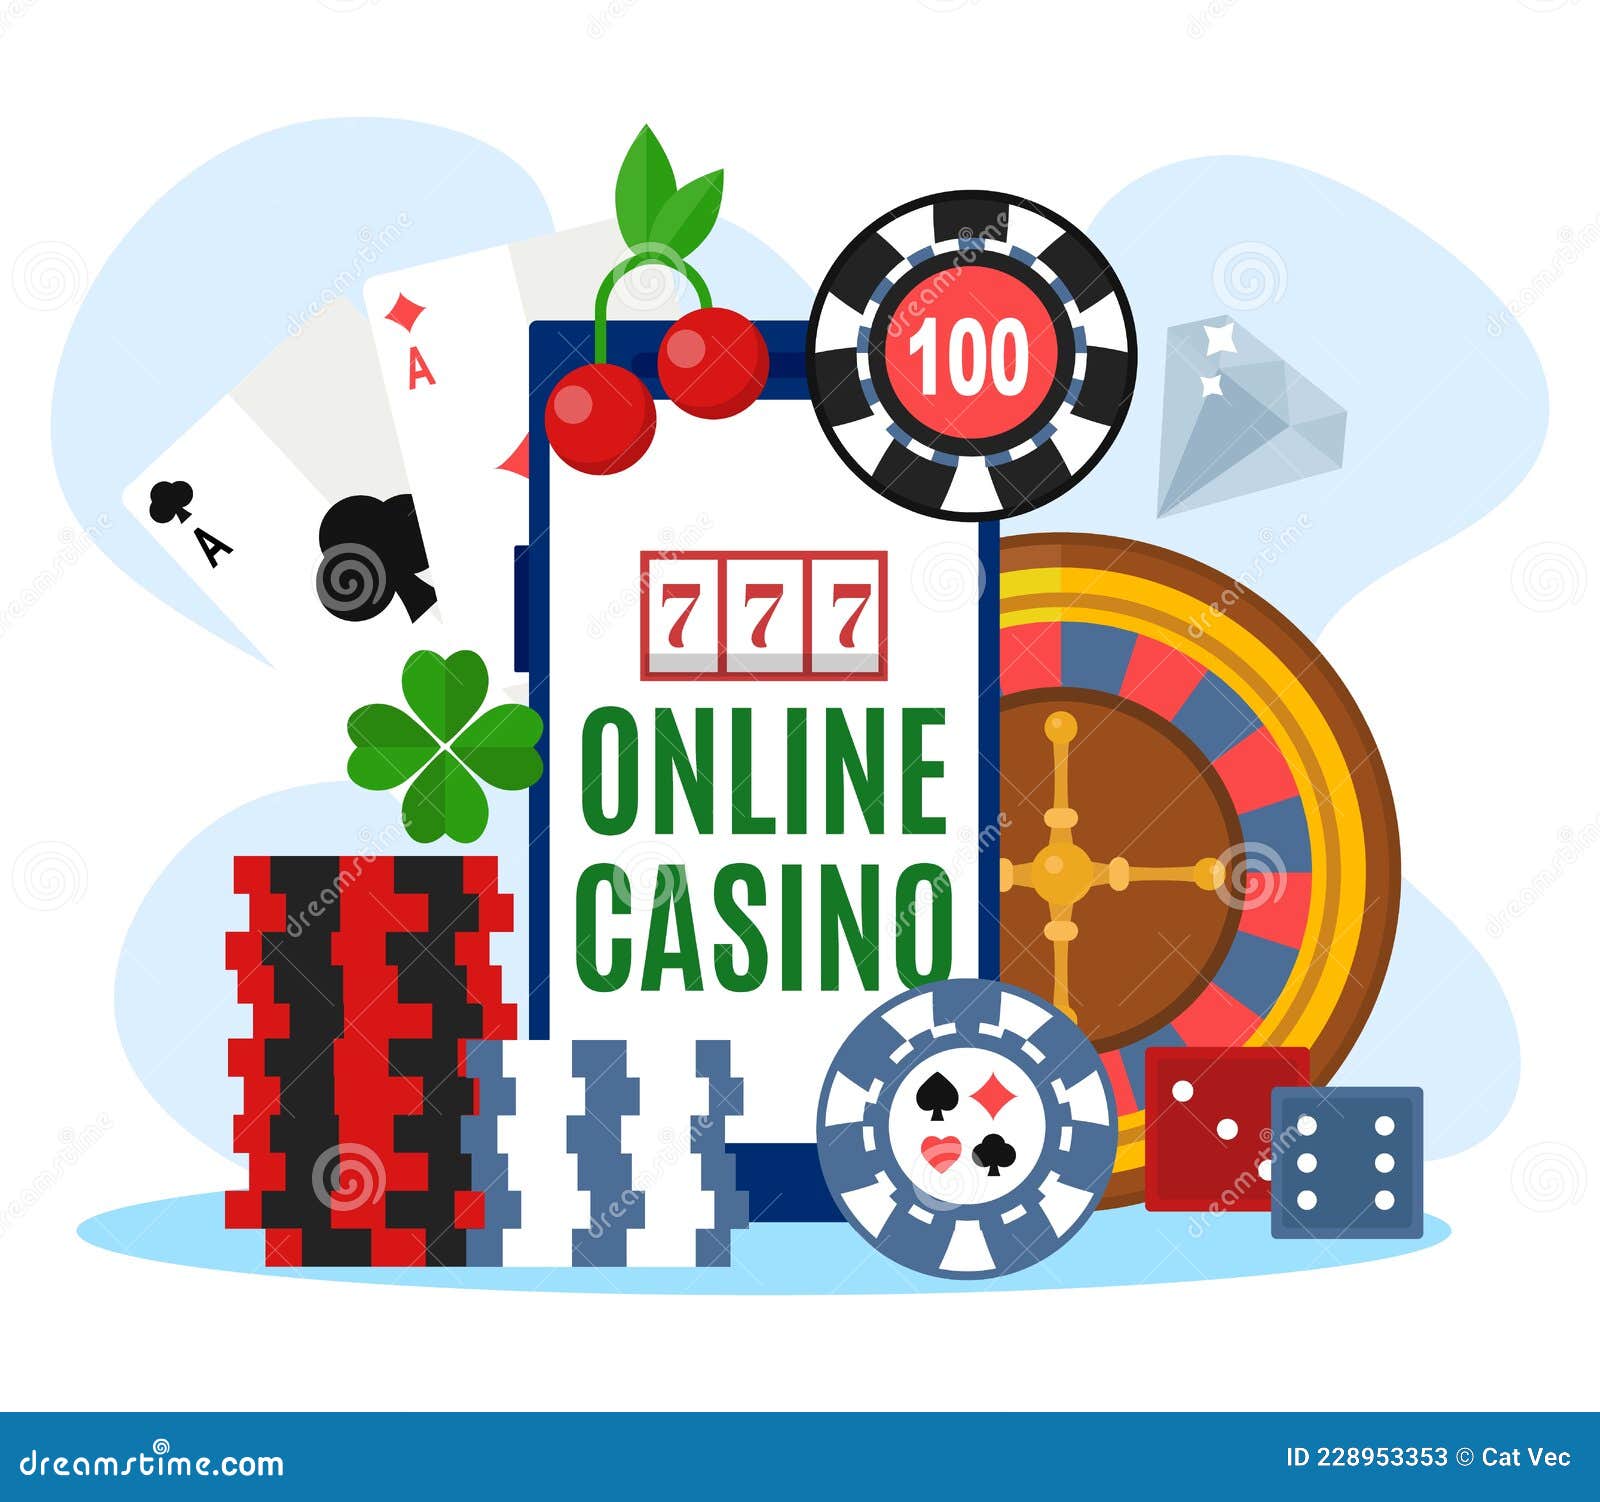 Casino online joga agora o conceito com roda de roleta 3d, moedas